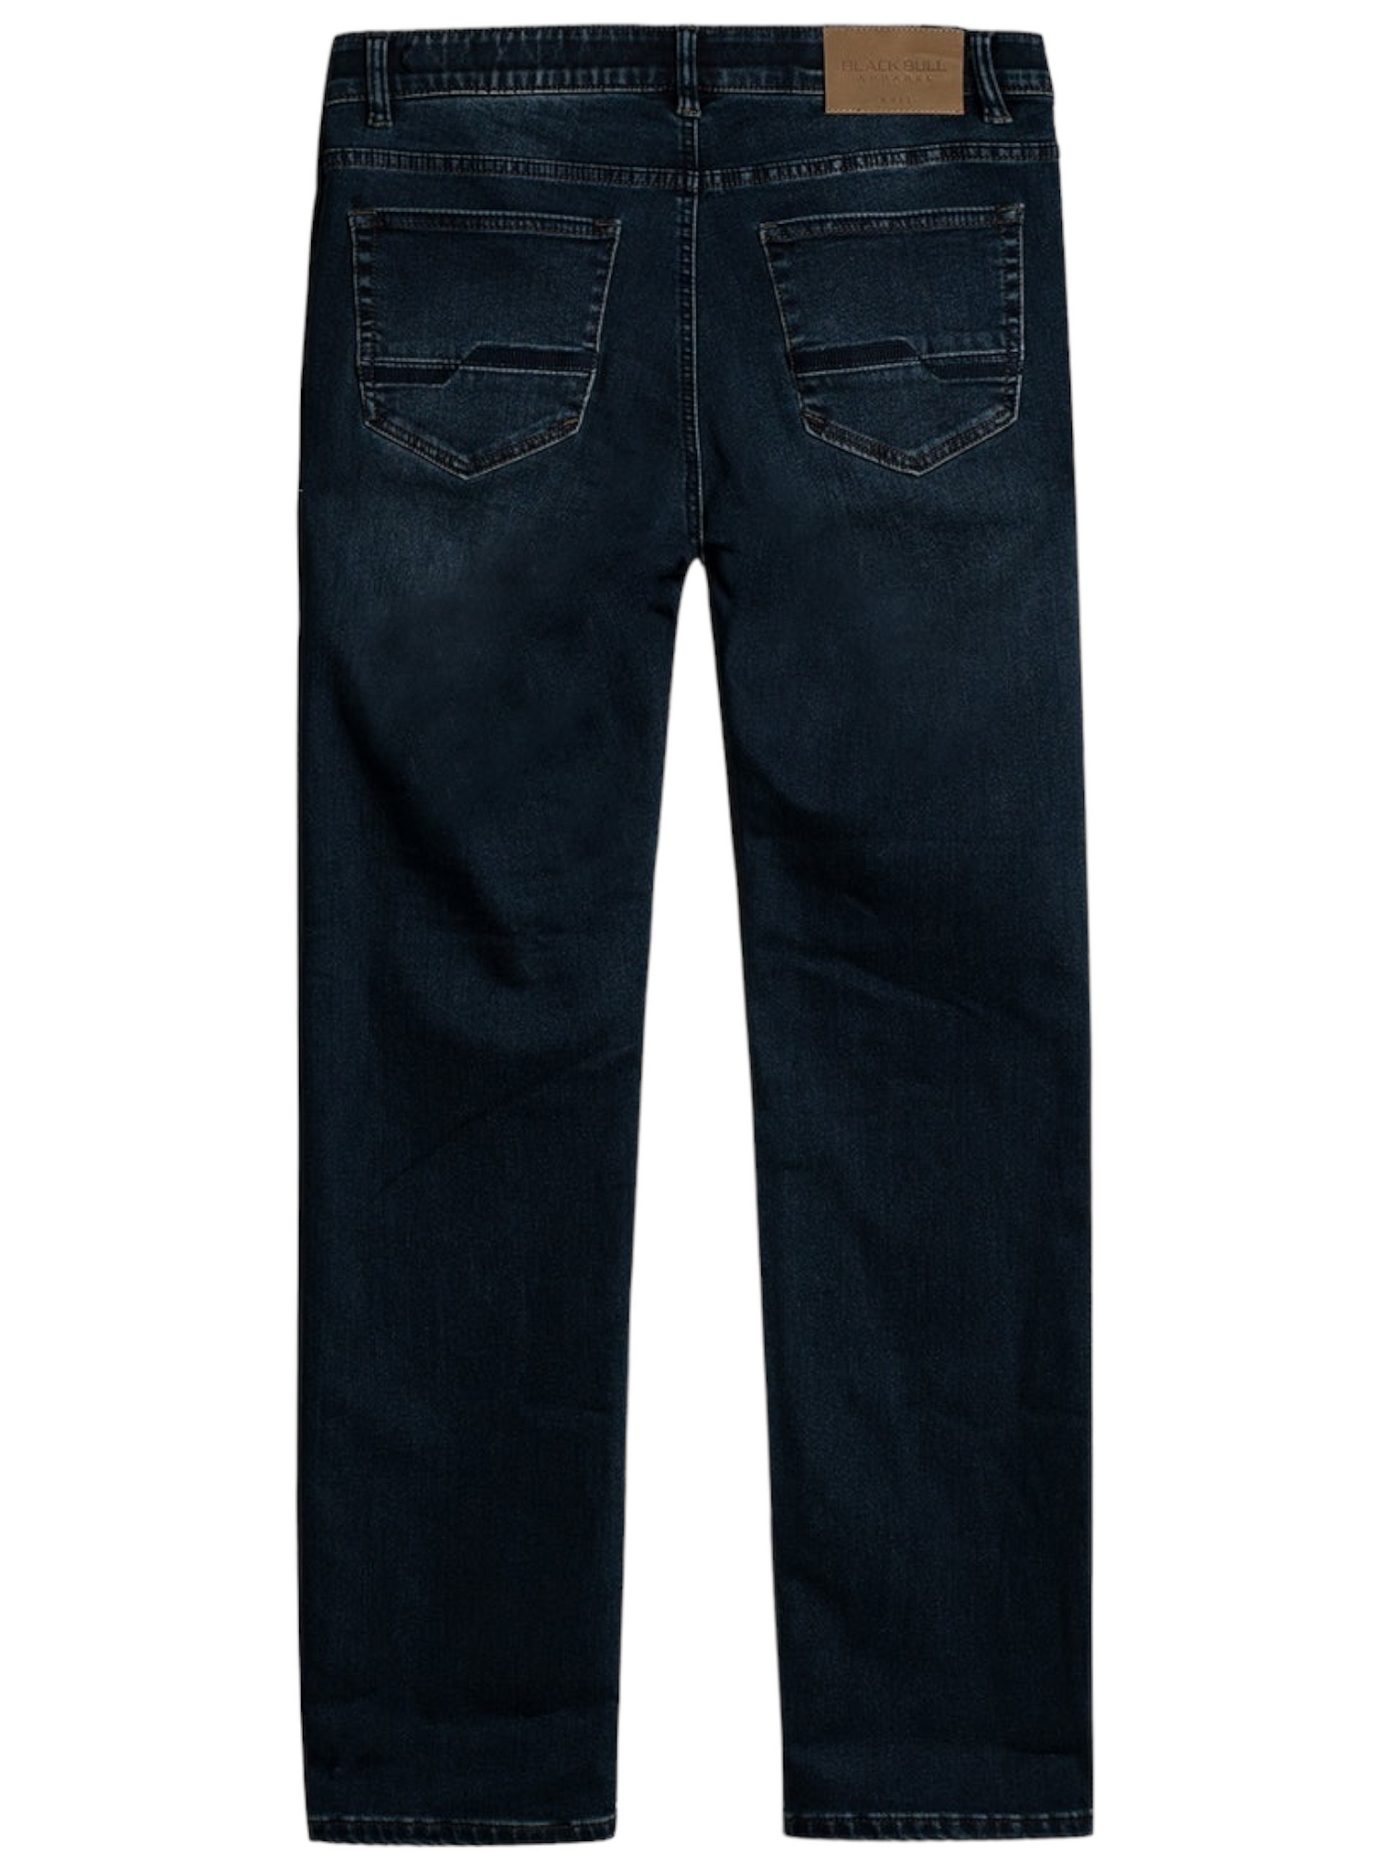 Jeans bleu foncé doublé effet délavé coupe étroite